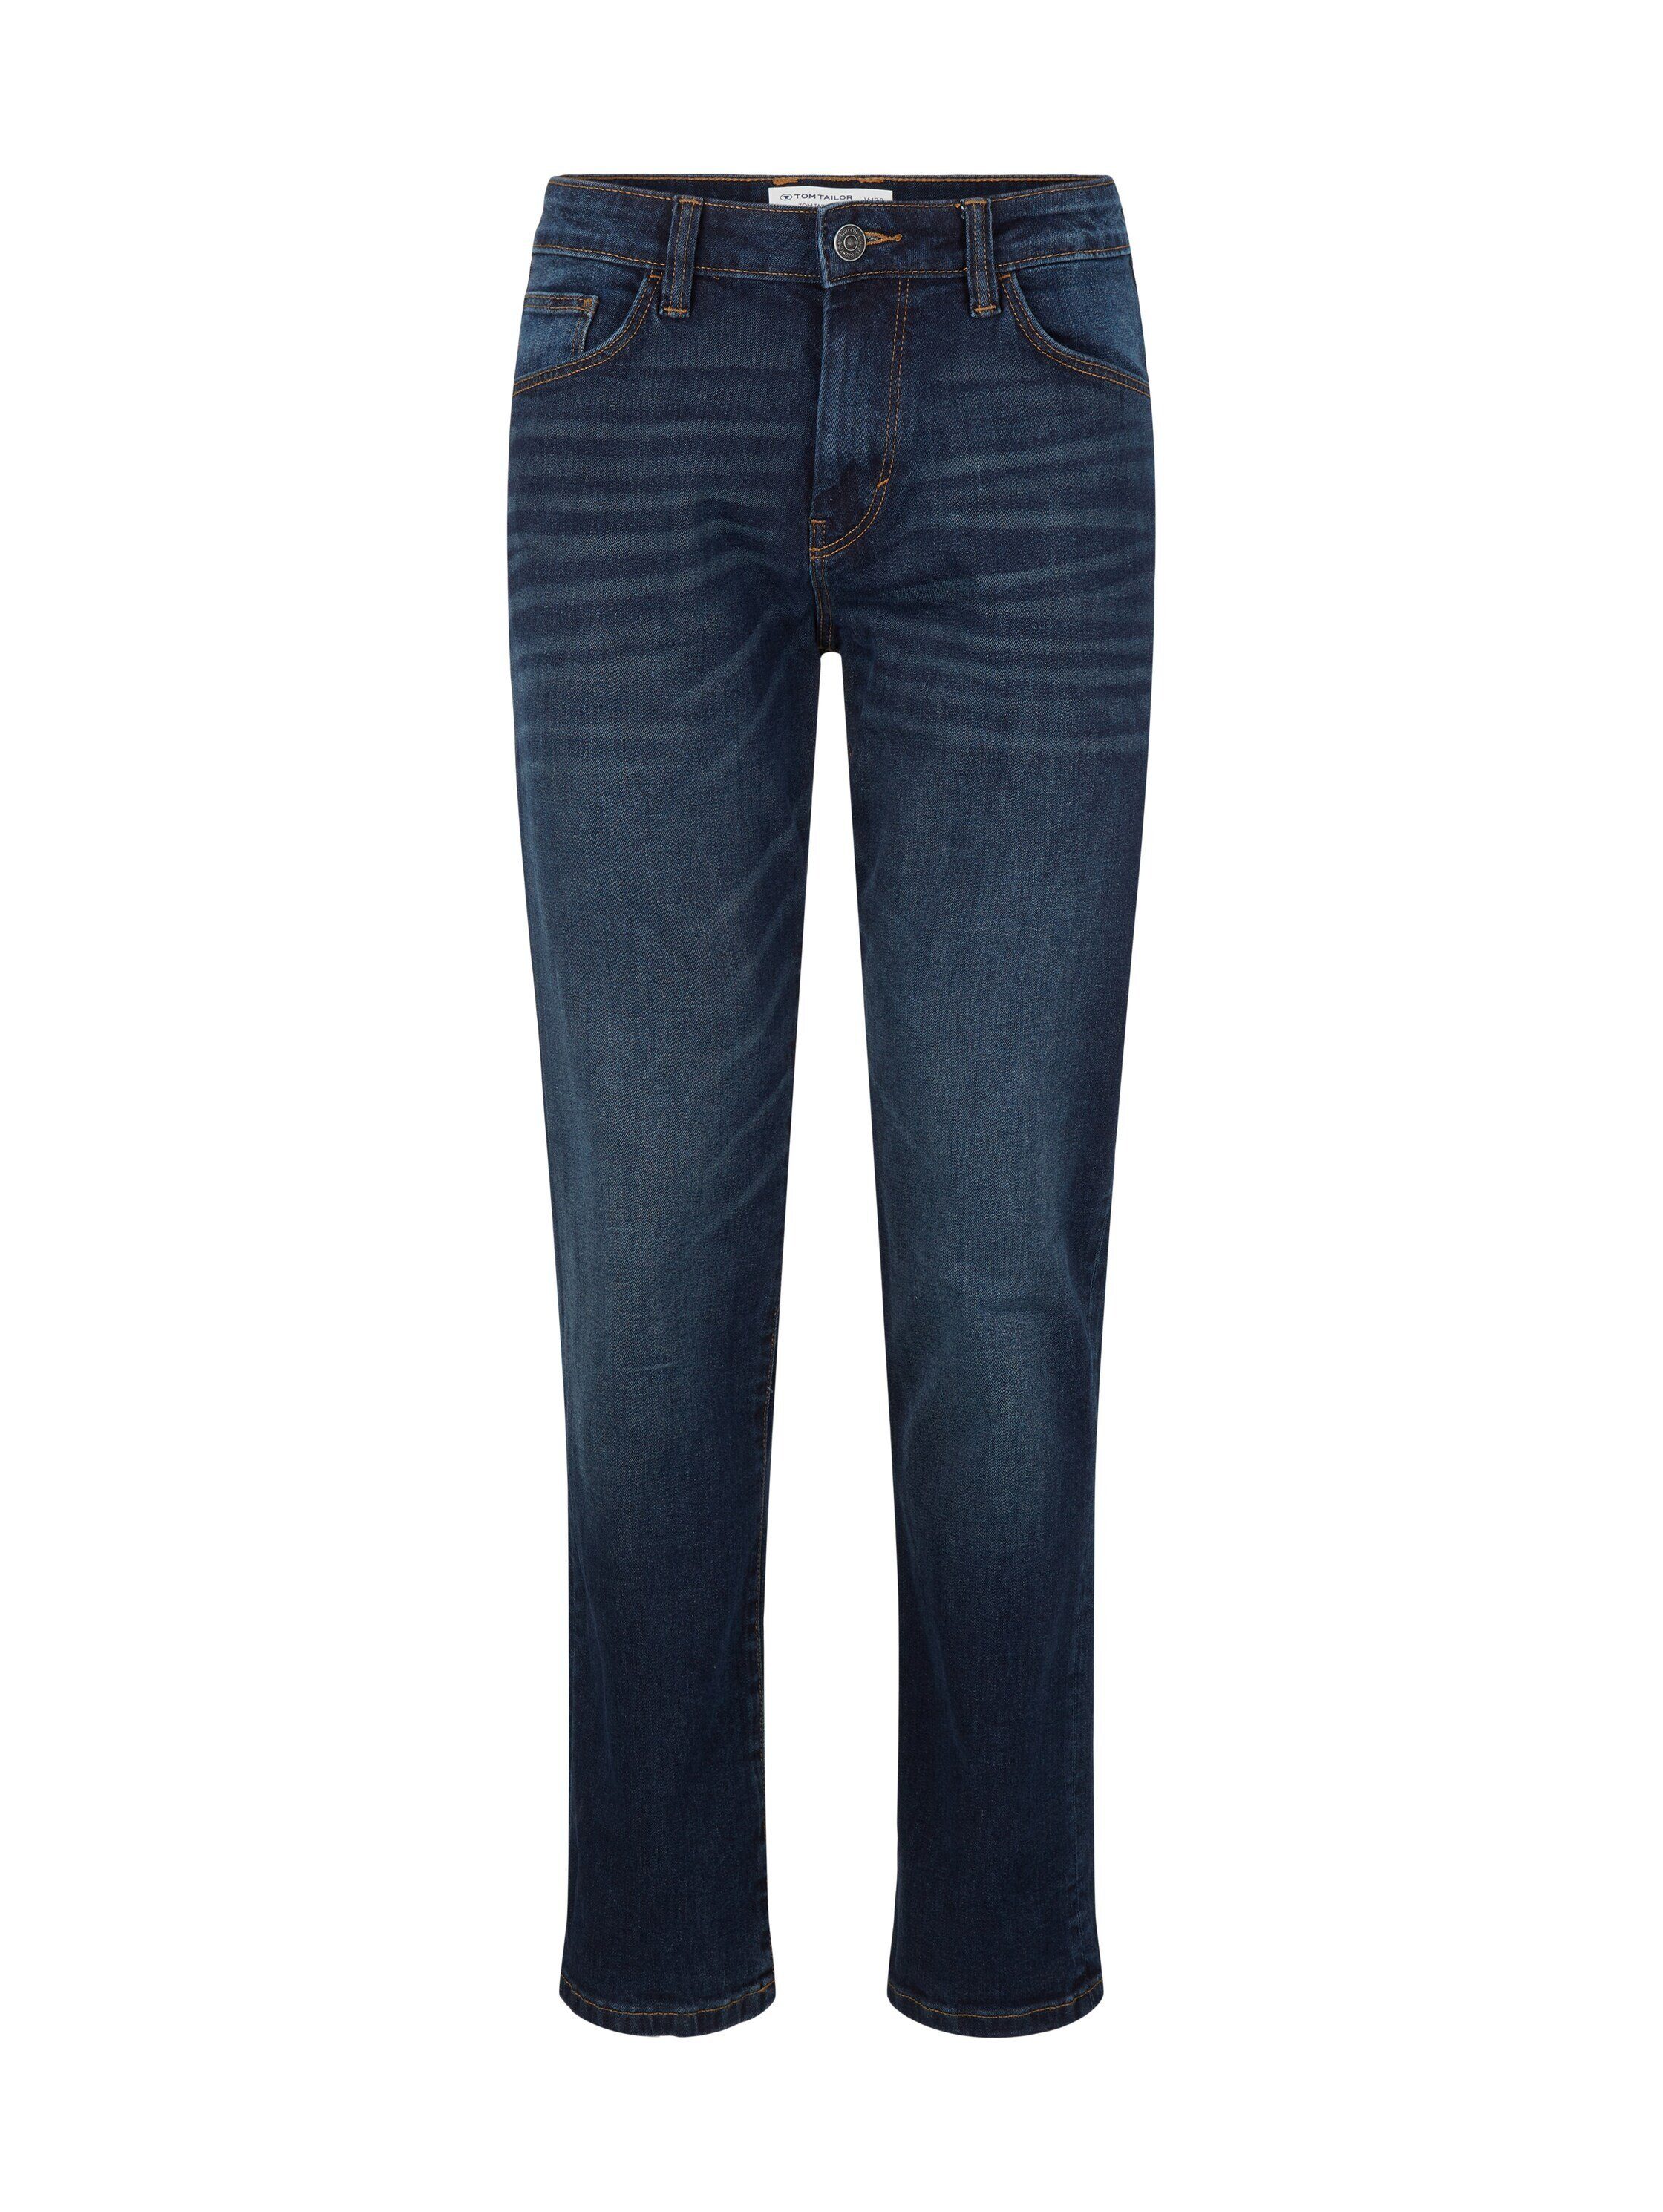 TOM TAILOR 5-Pocket-Jeans Hose Marvin Straight Jeans im Five-Pocket-Design | Straight-Fit Jeans